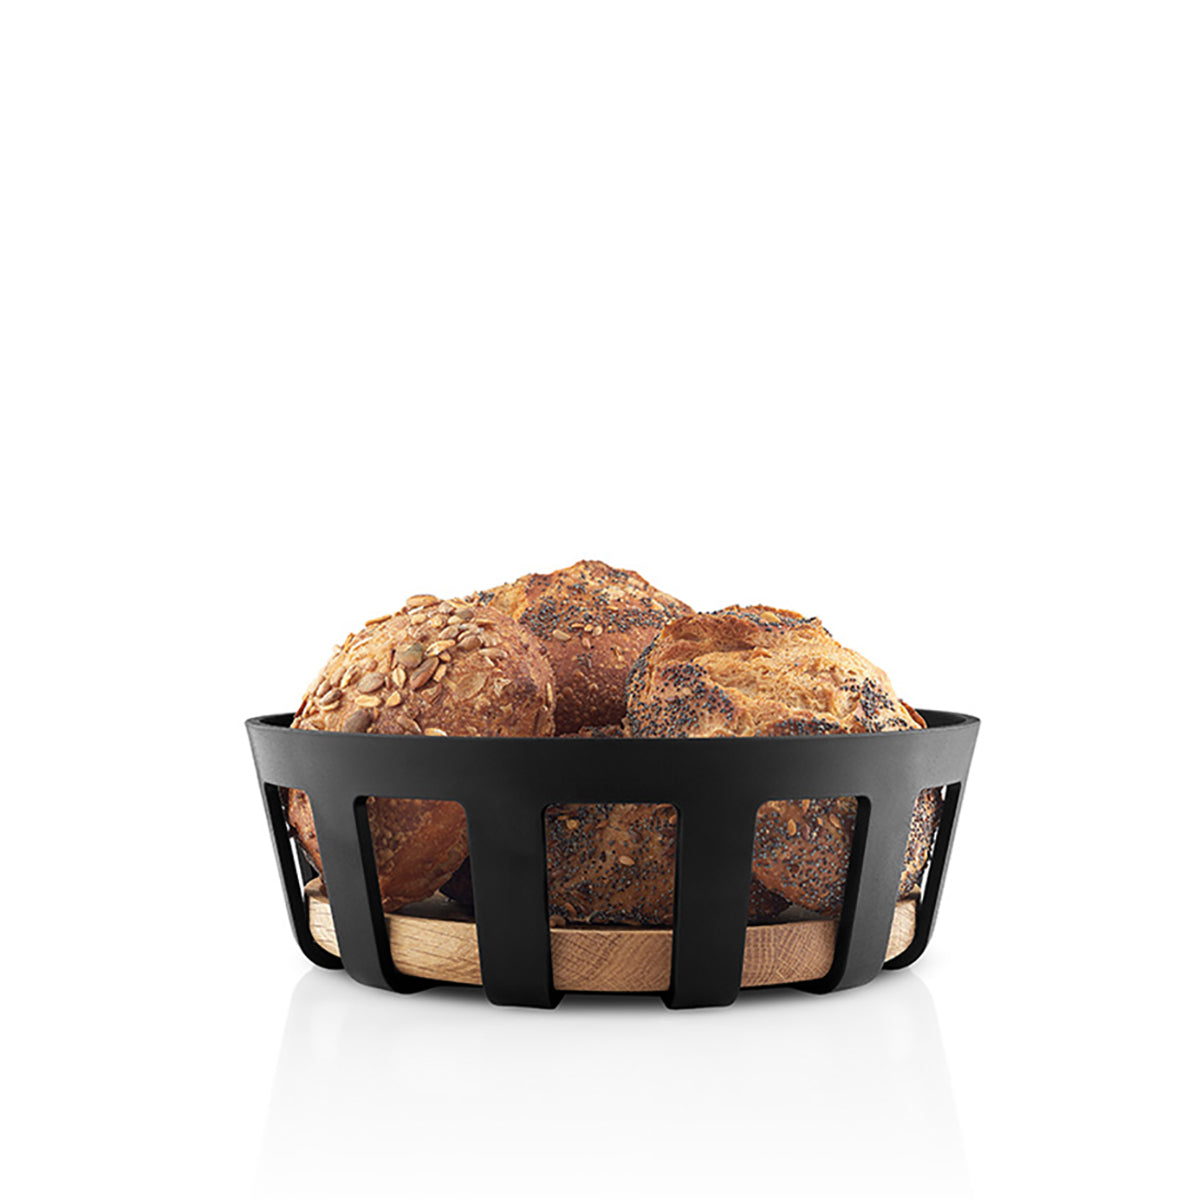 Nordic Kitchen Bread Basket 21.5cm